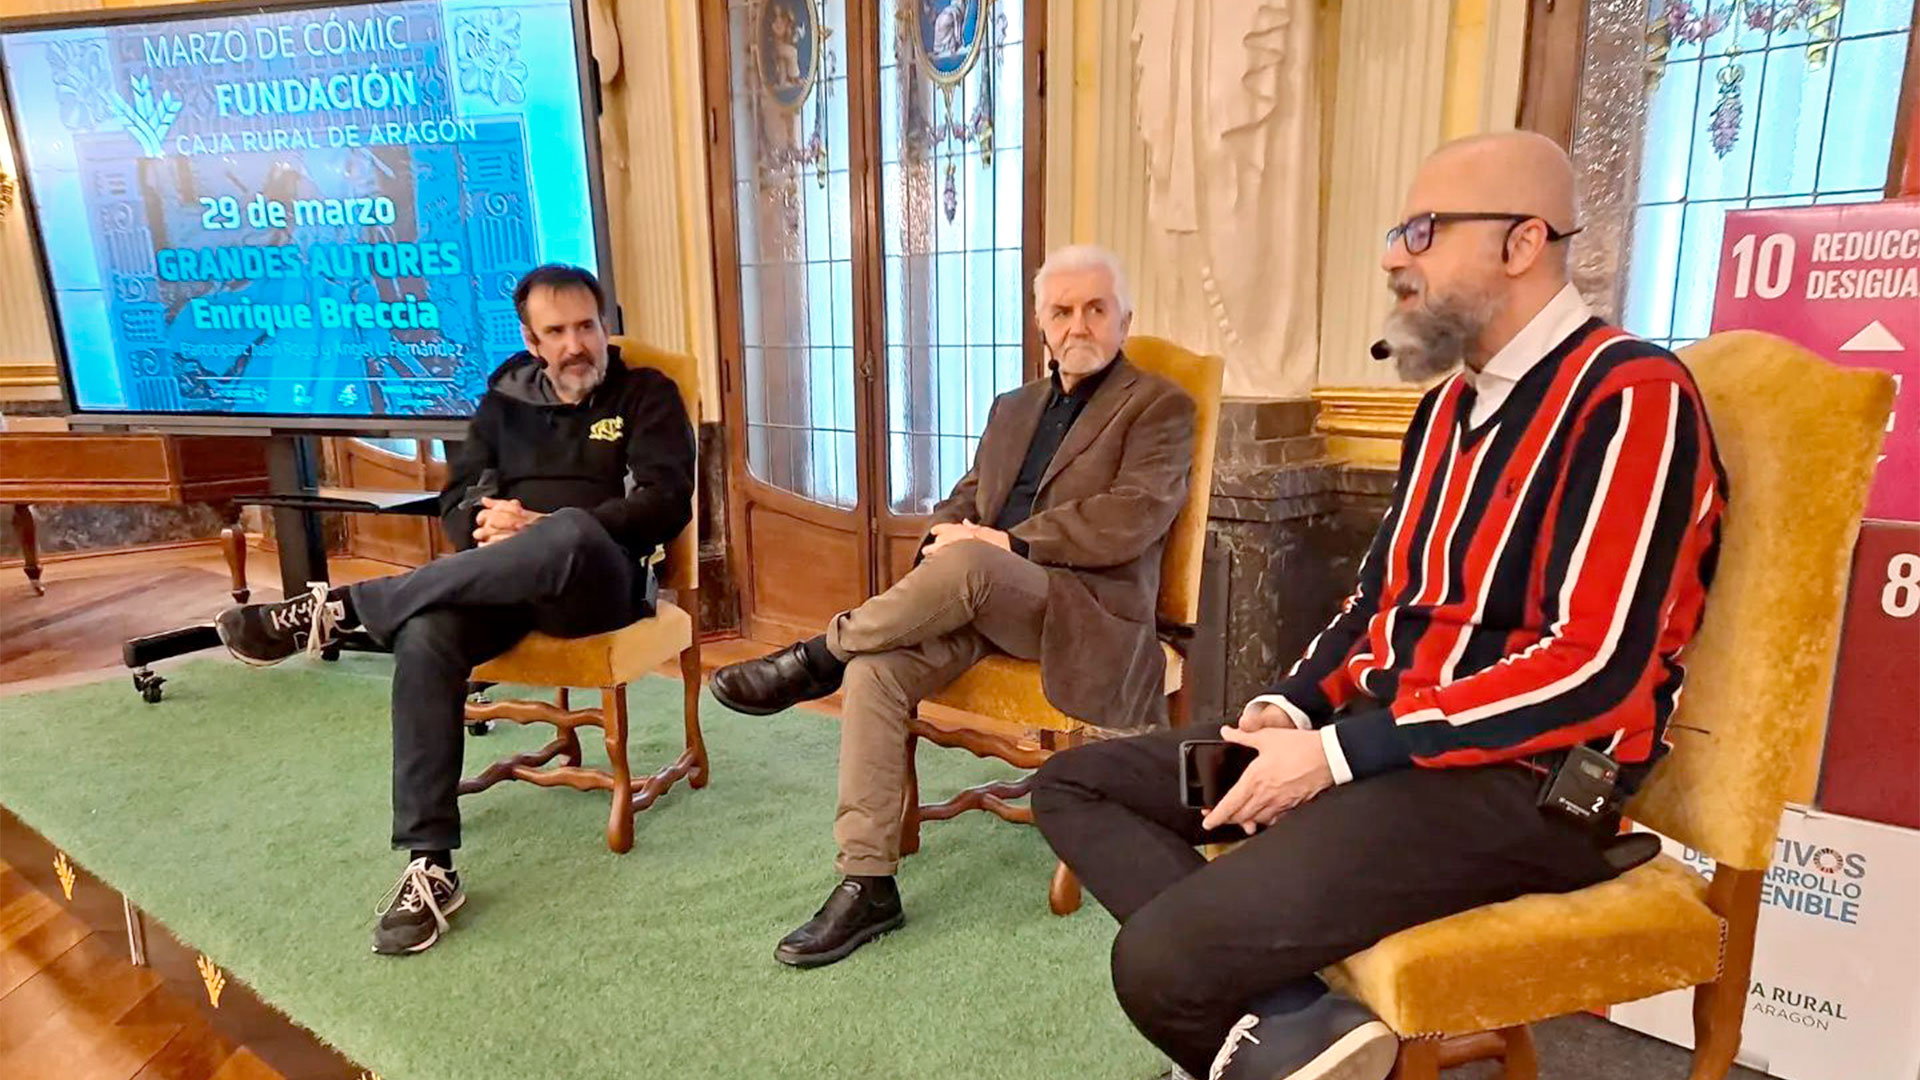 Enrique Breccia (centro) entrevistado por Juan Royo Abenia y Ángel Fernández el 29 de marzo pasado en Zaragoza (Fuente: Fundación Caja Rural de Aragón)